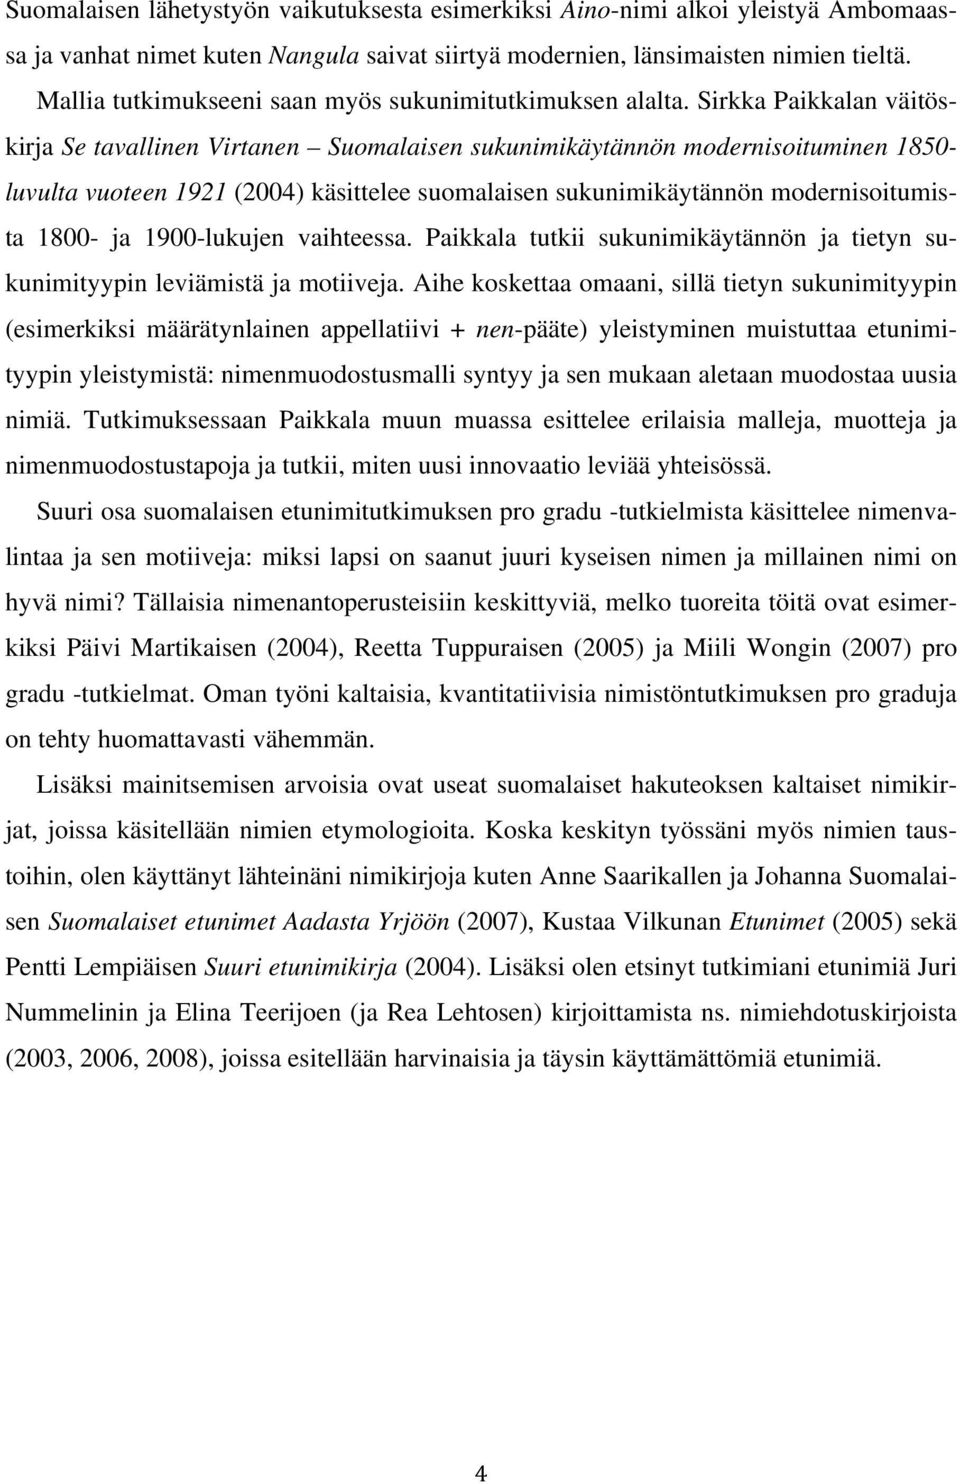 Sirkka Paikkalan väitöskirja Se tavallinen Virtanen Suomalaisen sukunimikäytännön modernisoituminen 1850- luvulta vuoteen 1921 (2004) käsittelee suomalaisen sukunimikäytännön modernisoitumista 1800-